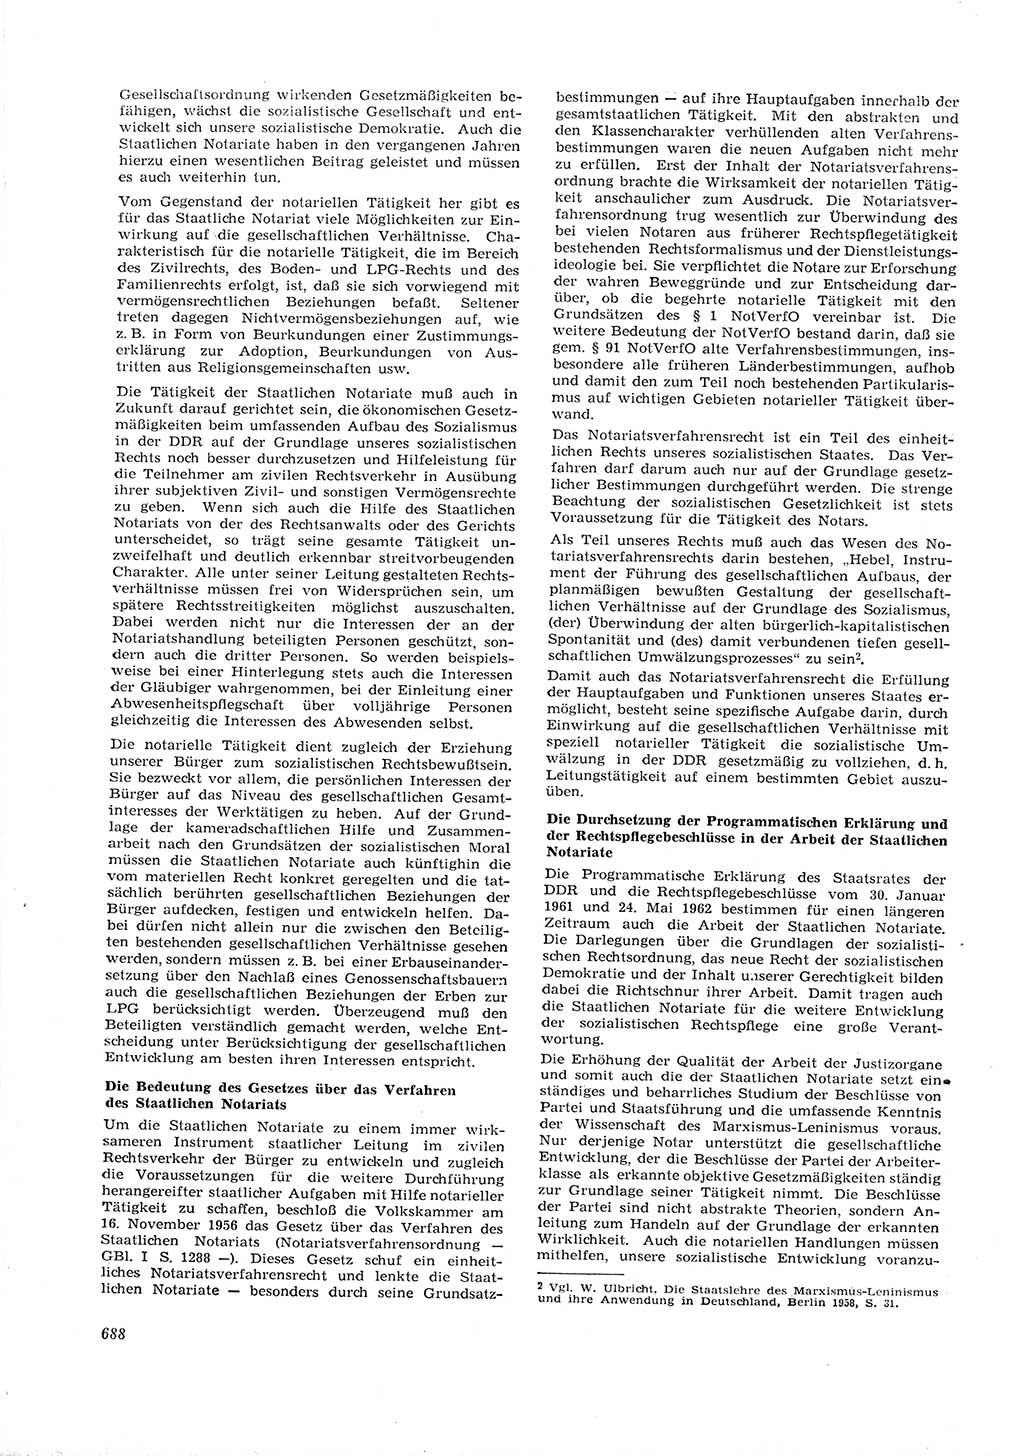 Neue Justiz (NJ), Zeitschrift für Recht und Rechtswissenschaft [Deutsche Demokratische Republik (DDR)], 16. Jahrgang 1962, Seite 688 (NJ DDR 1962, S. 688)